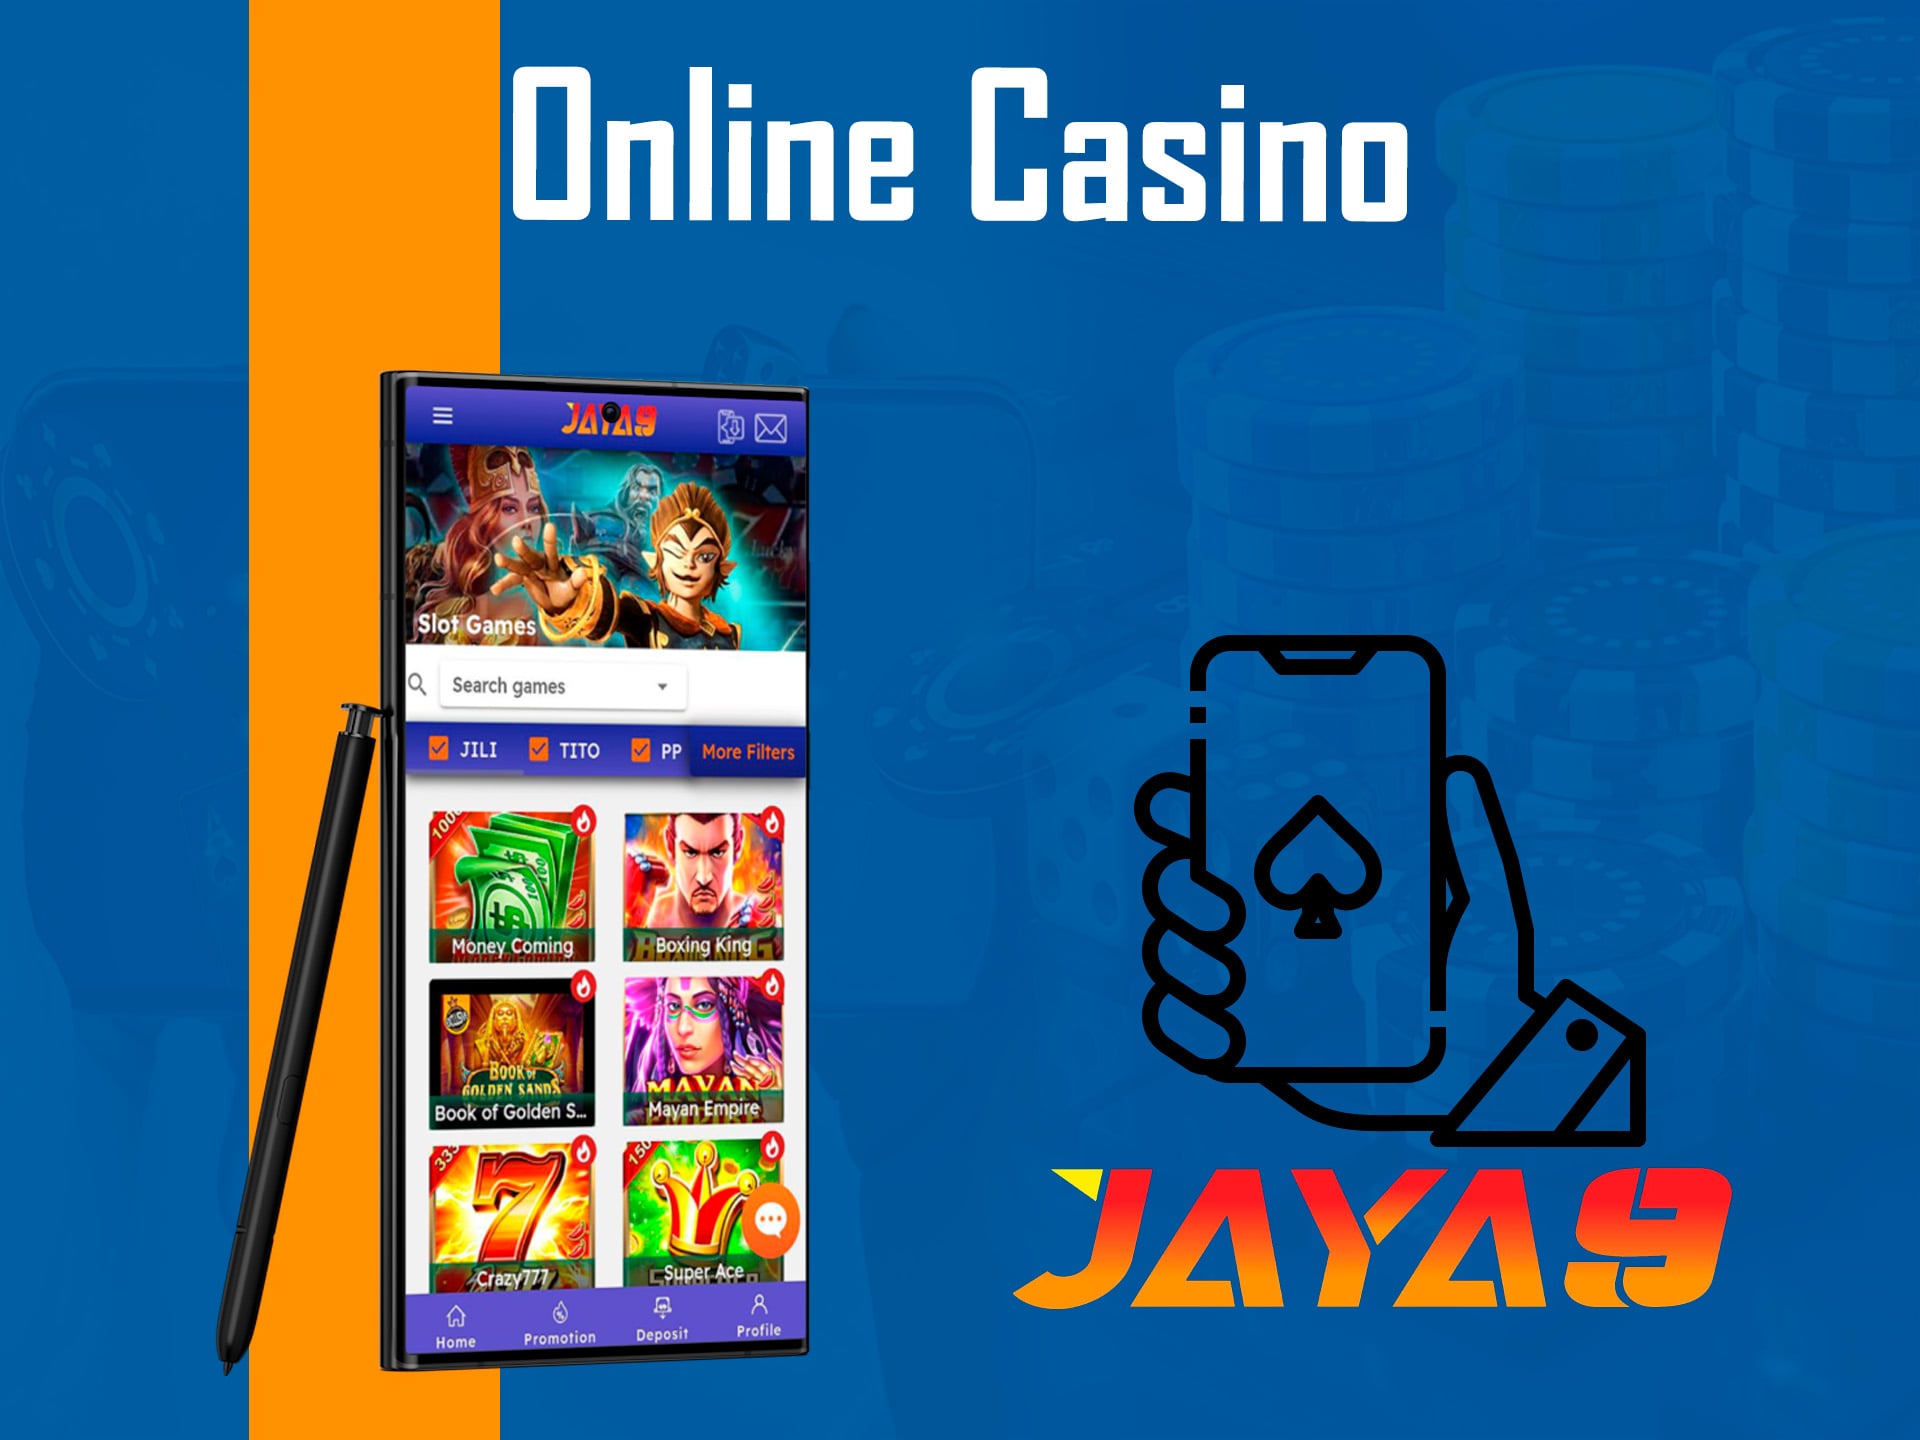 online casino games in jaya9 apps